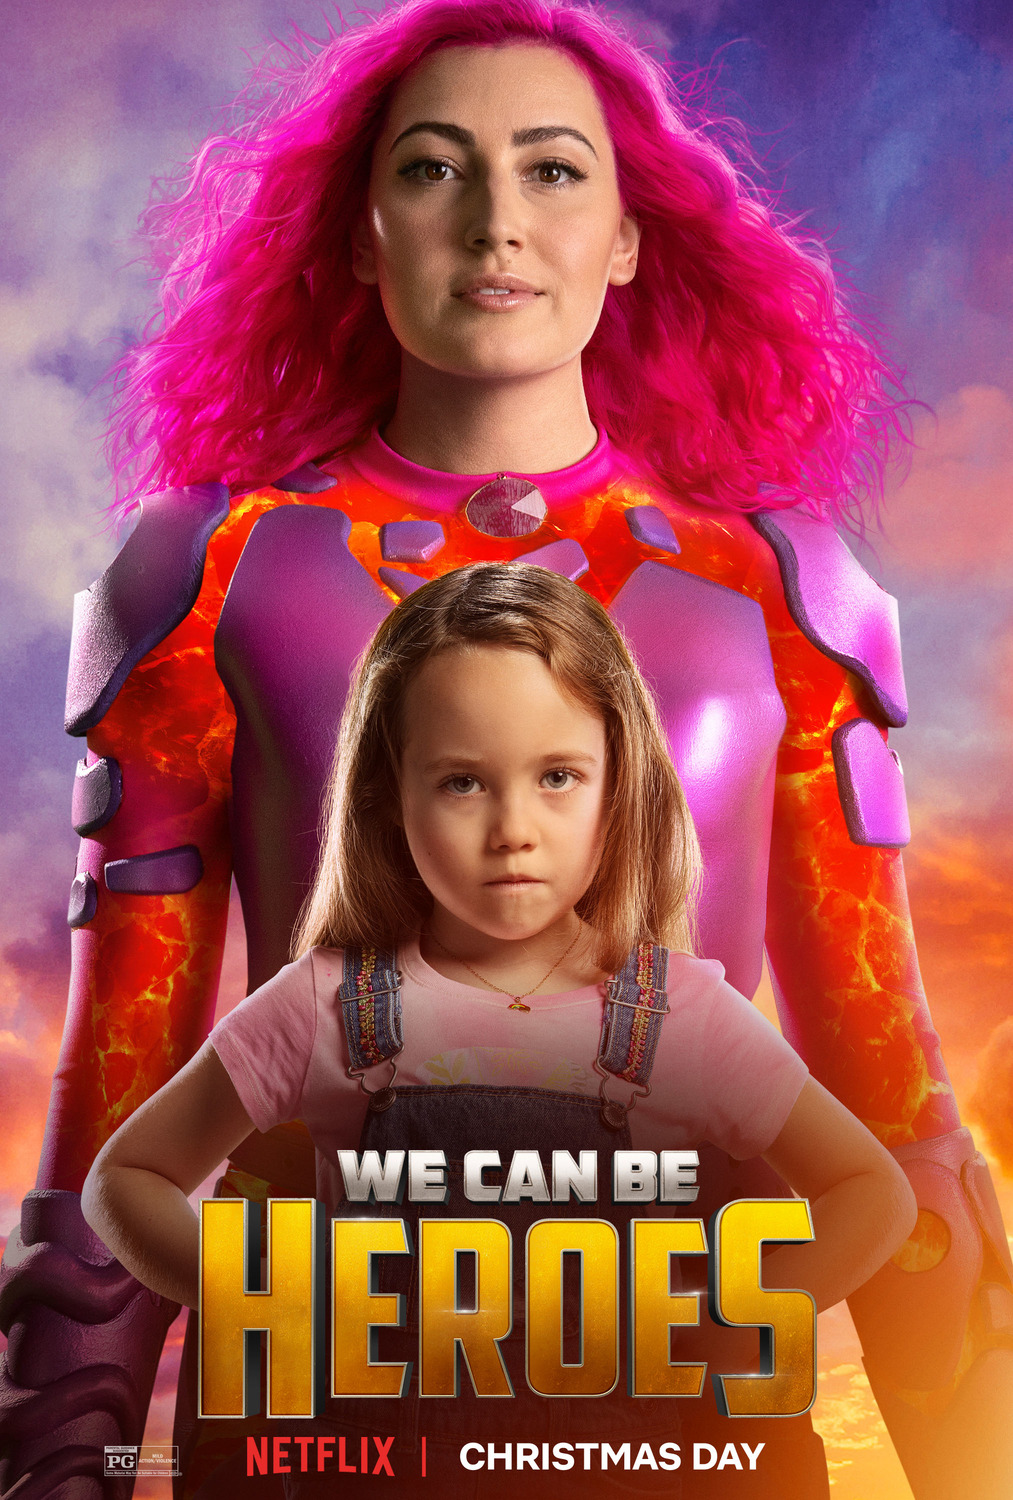 Постер фильма "Мы можем стать героями" .